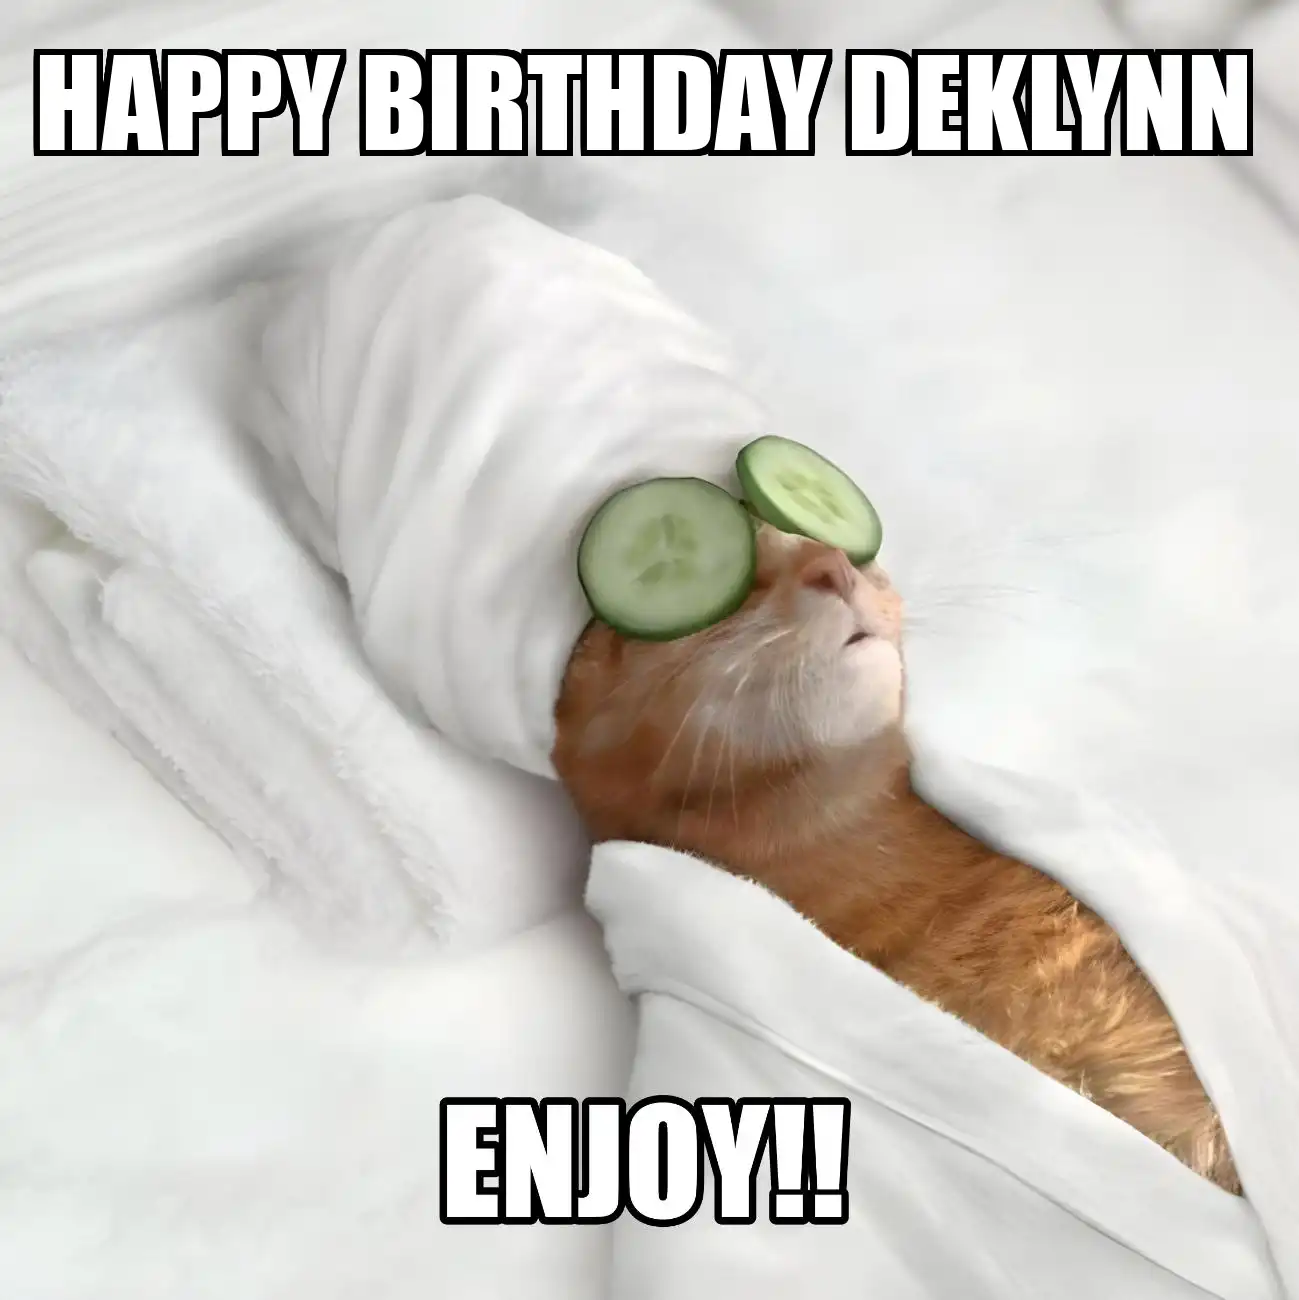 Happy Birthday Deklynn Enjoy Cat Meme